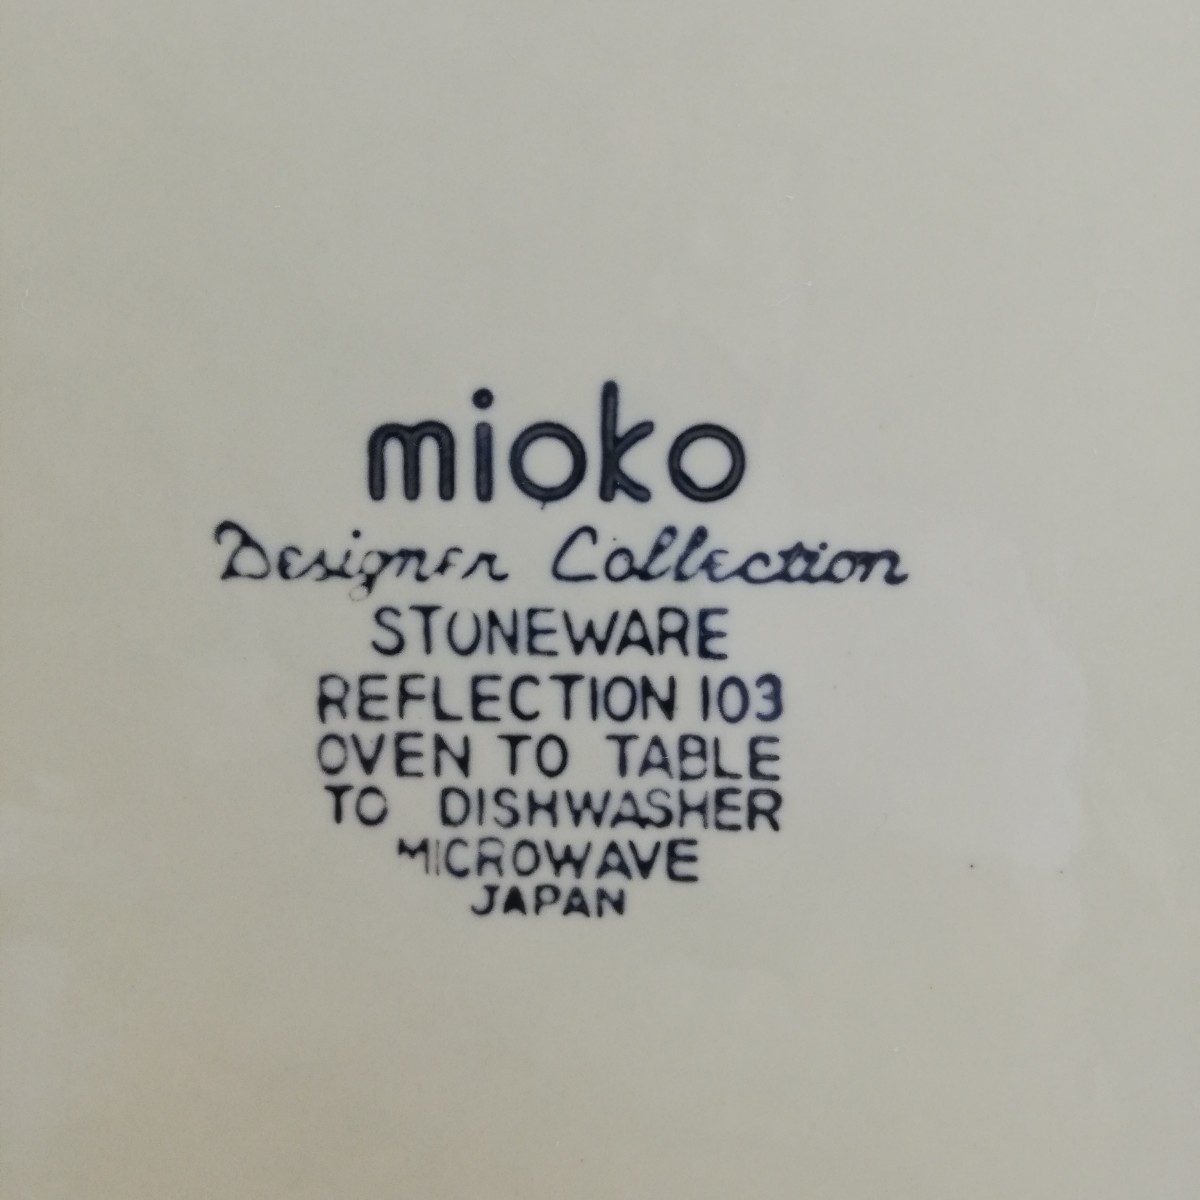 昭和レトロ 逆輸入食器 mioko 花柄ブルーライン ストーンウェア 耐熱皿 直径26.7cm×高さ2.2cm 未使用品 [日本製 大皿]の画像4